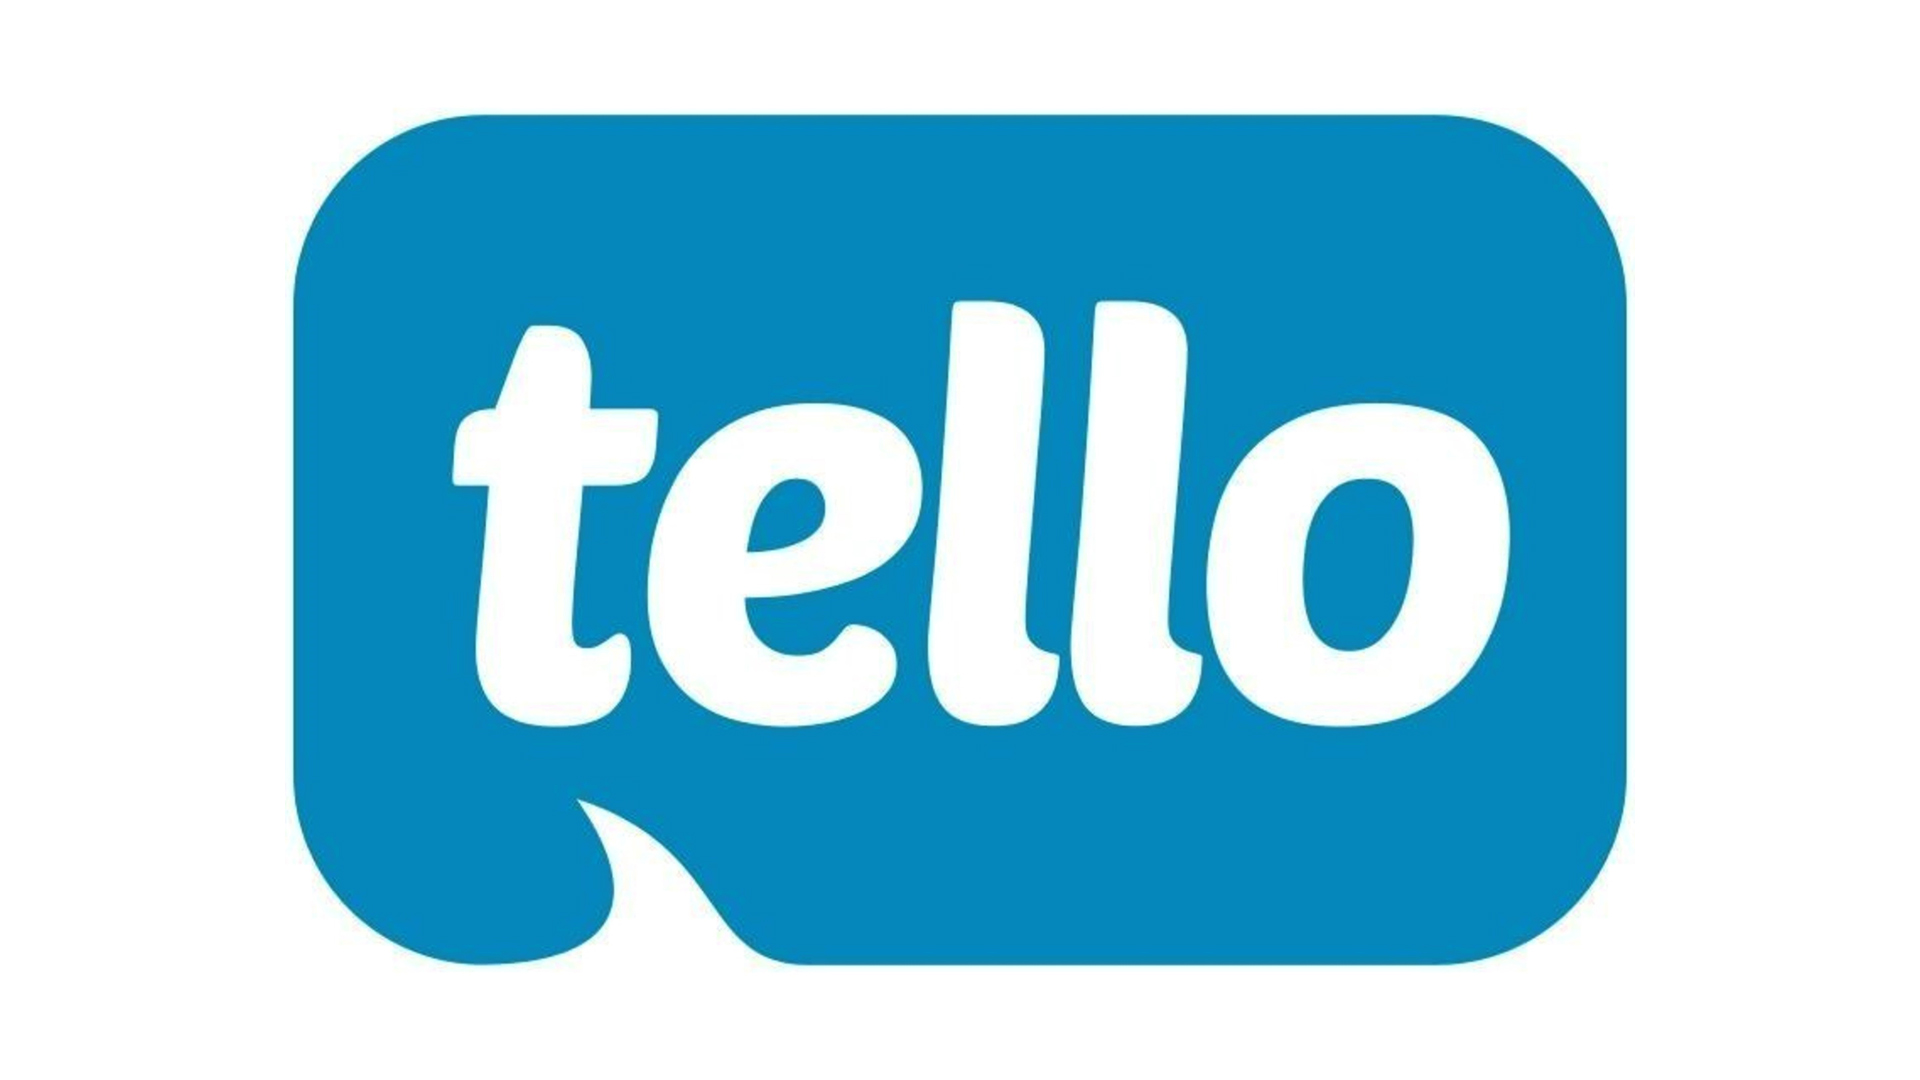 The Tello logo